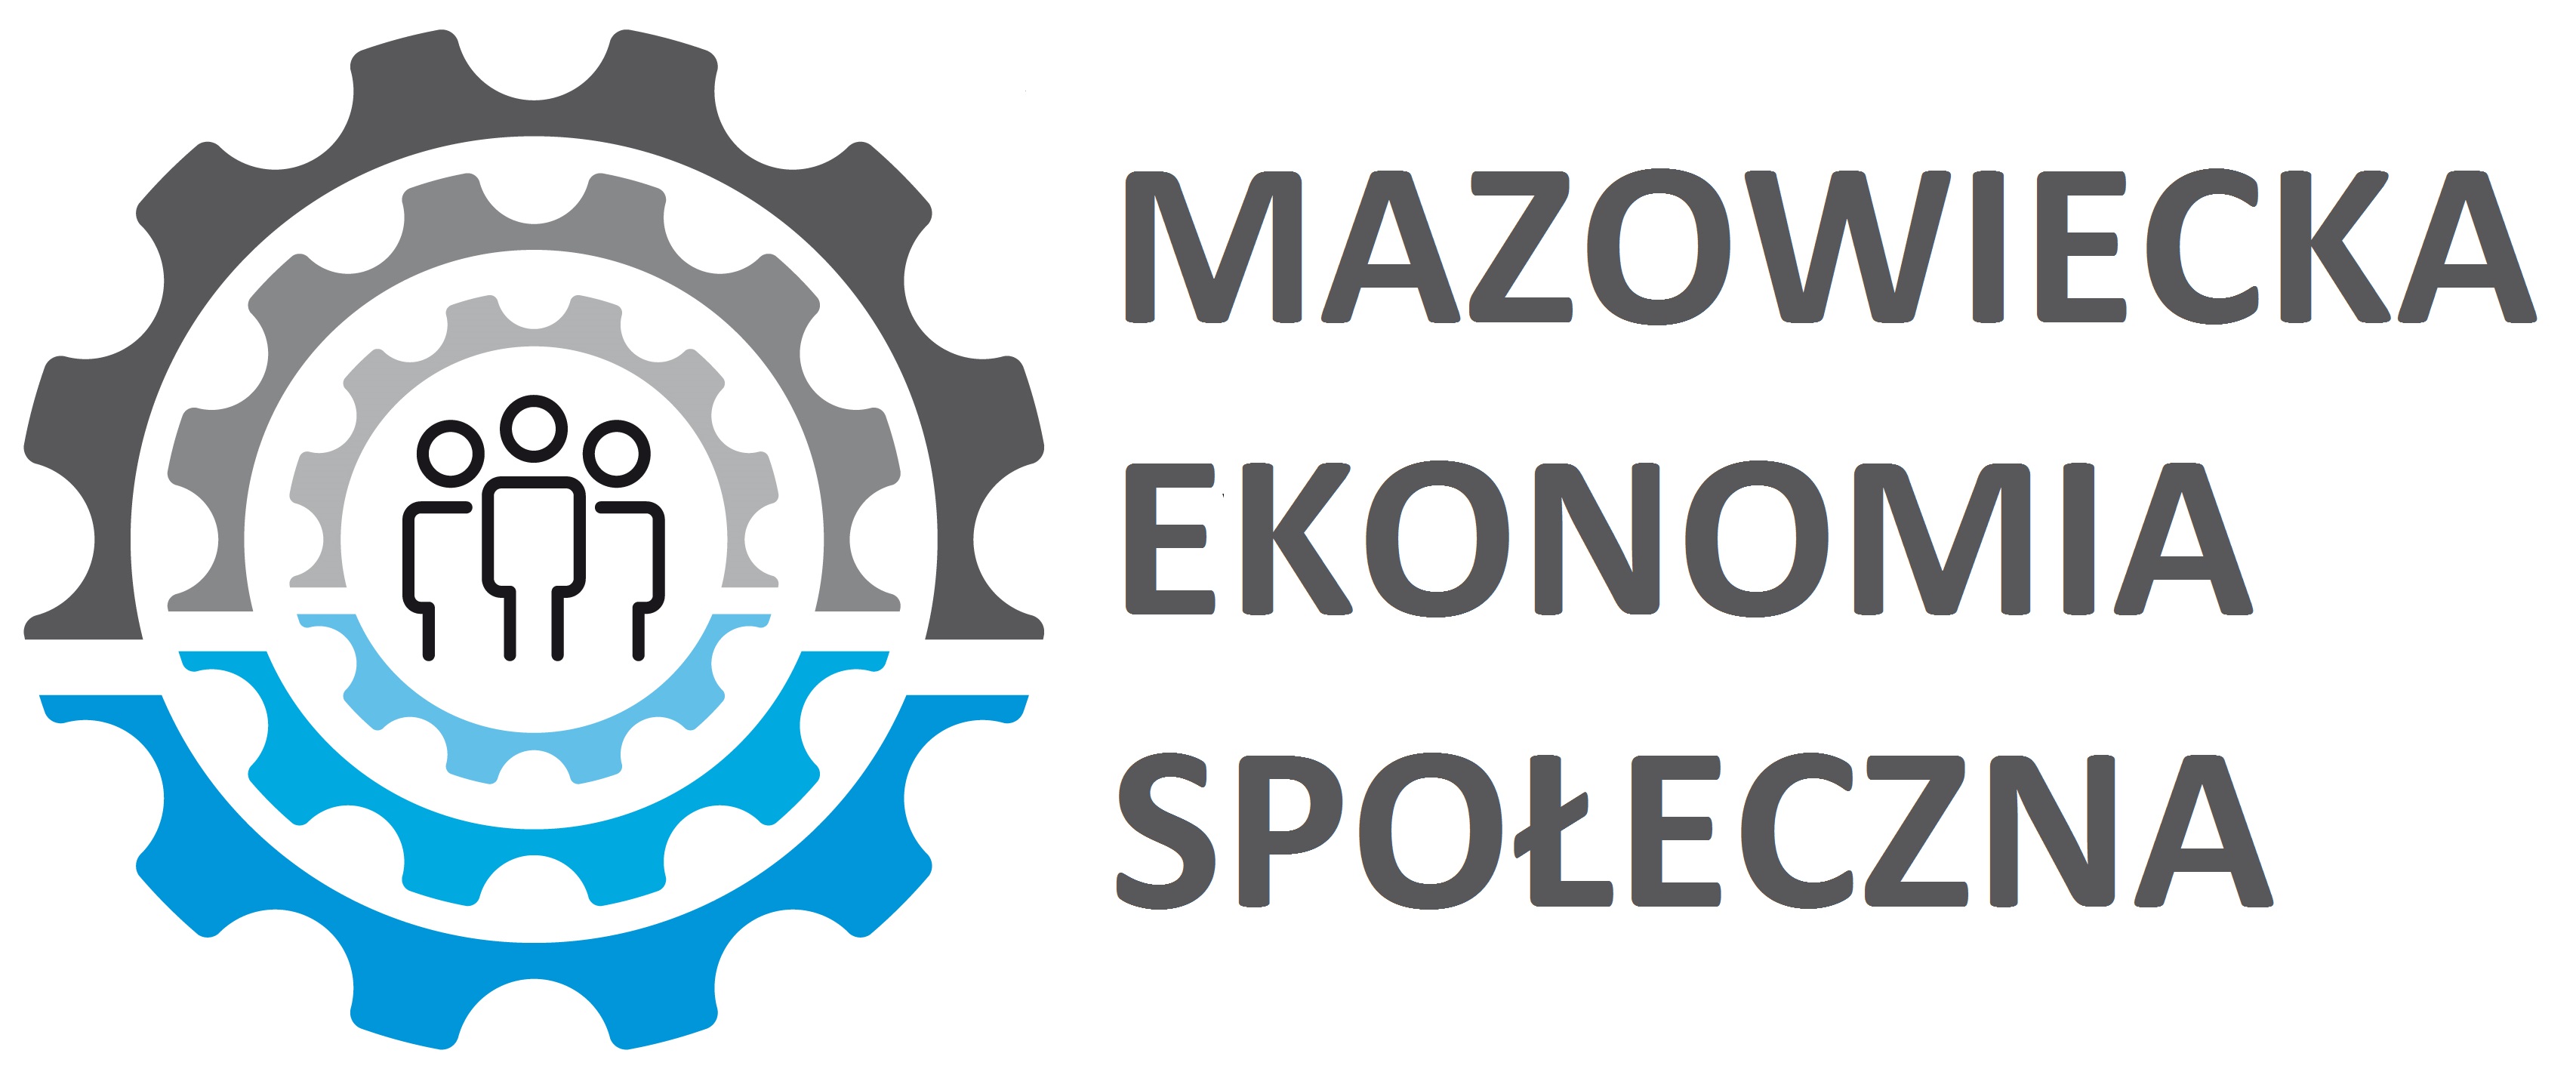 Logo Mazowiecka Ekonomia Społeczna